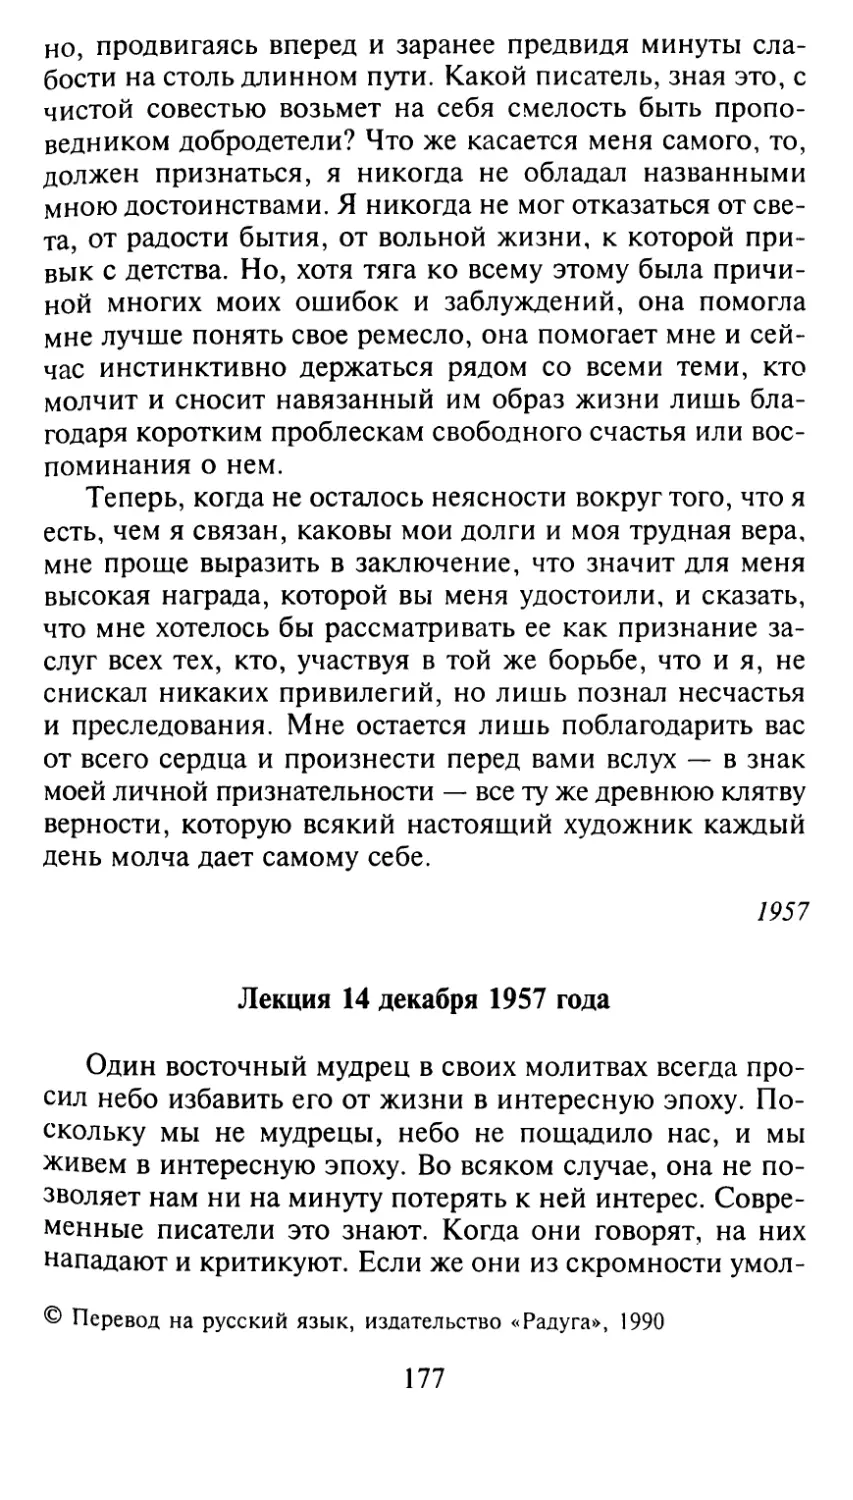 Лекция 14 декабря 1957 года. Перевела И. Кузнецова